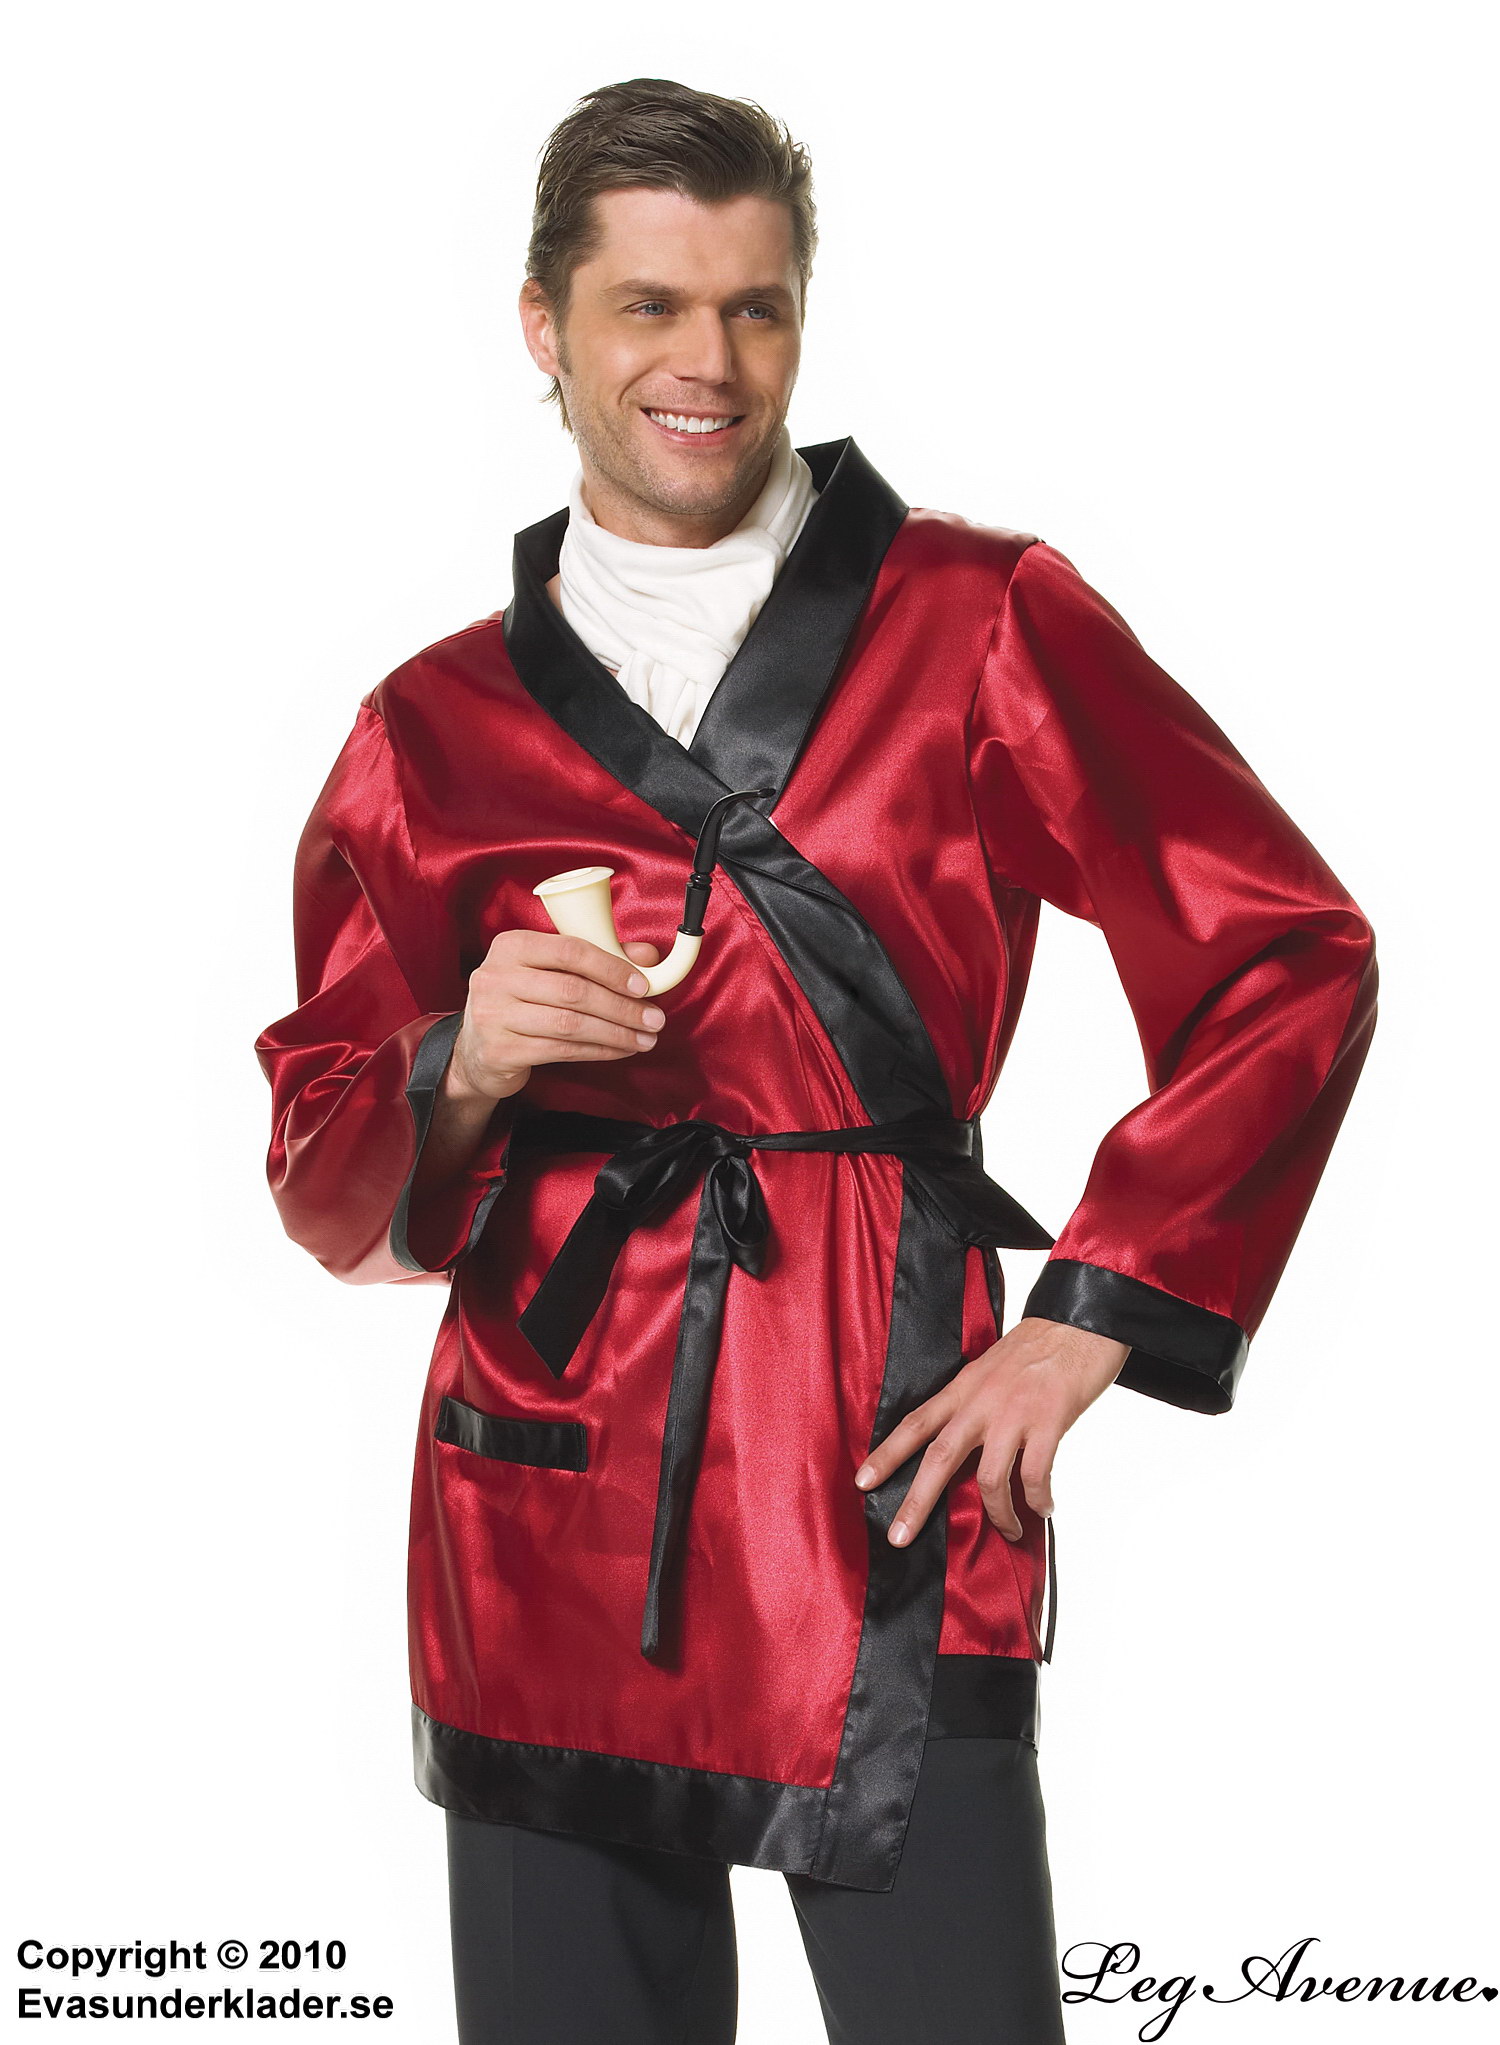 Hugh Hefner, costume robe, satin, bow, long sleeves